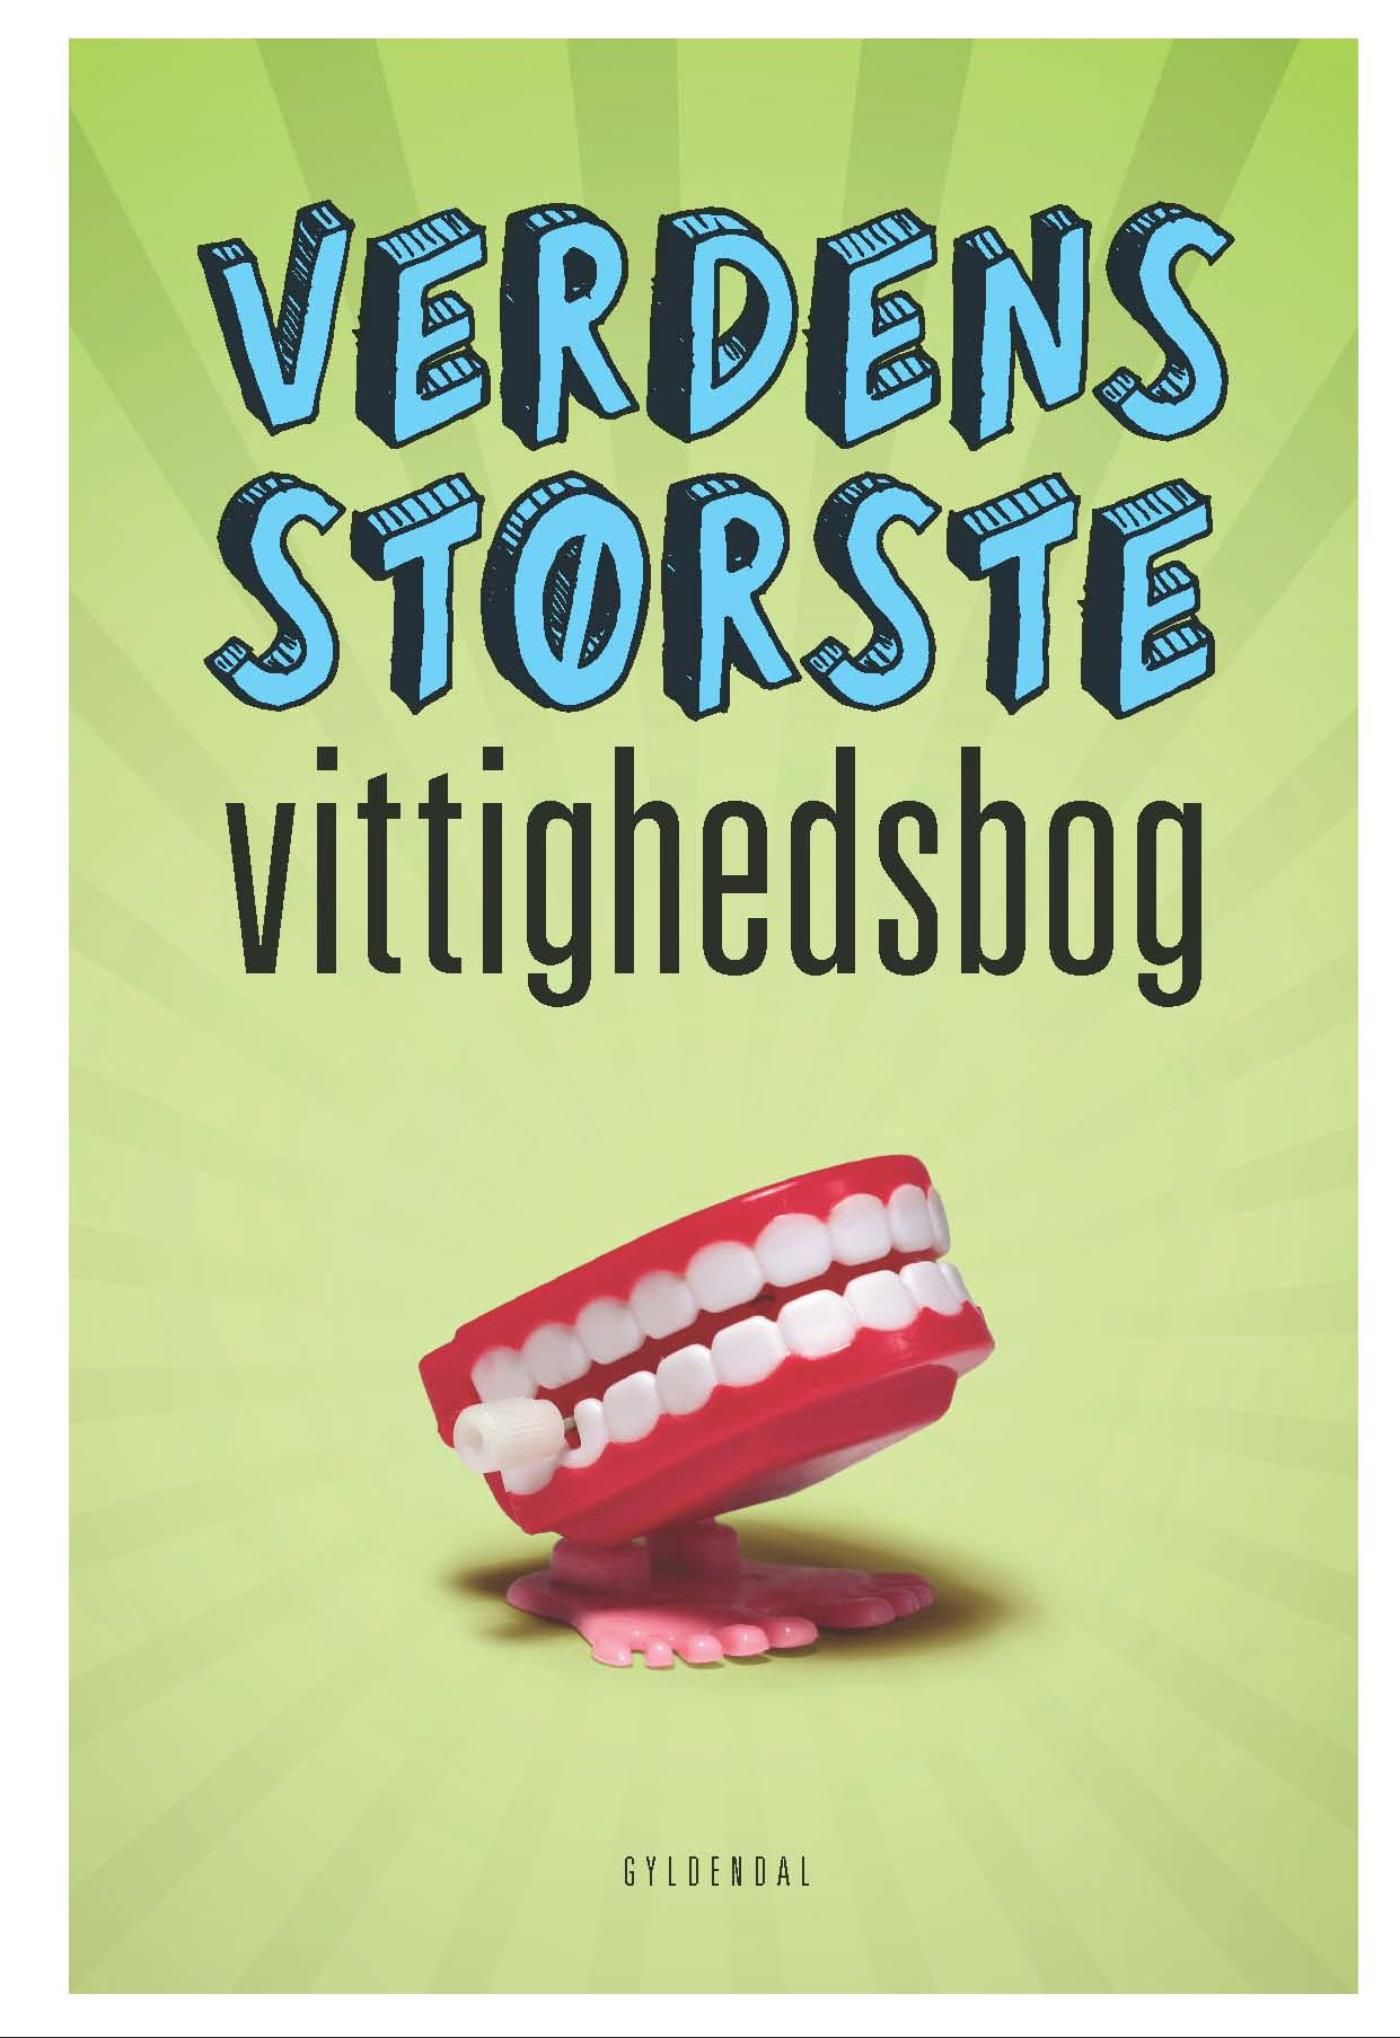 Verdens største vittighedsbog, eBook by Sten Wijkman Kjærsgaard